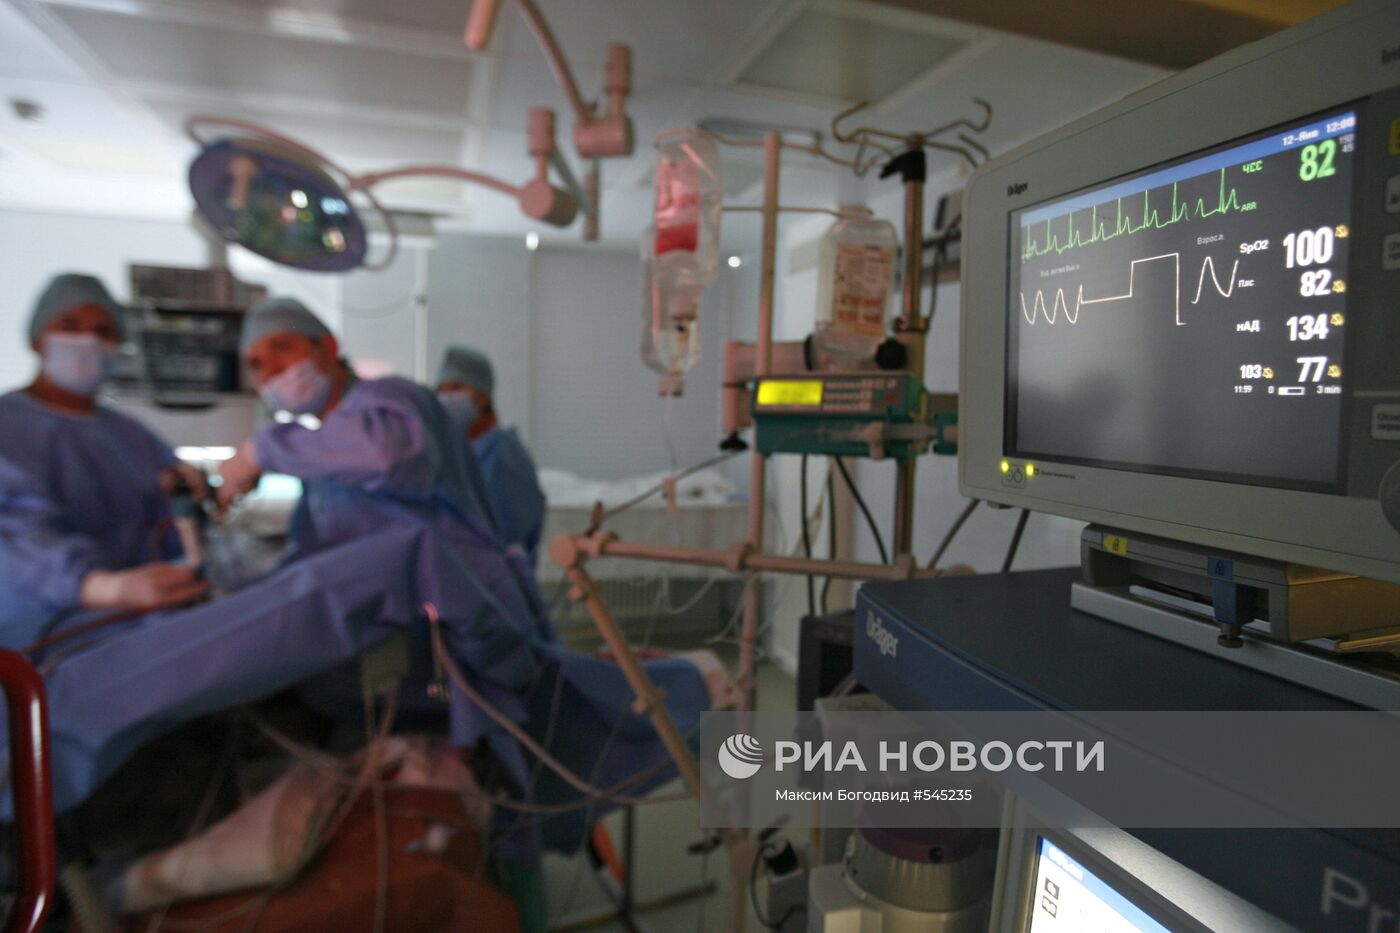 Уникальную операцию провели в онкологическом диспансере в Казани